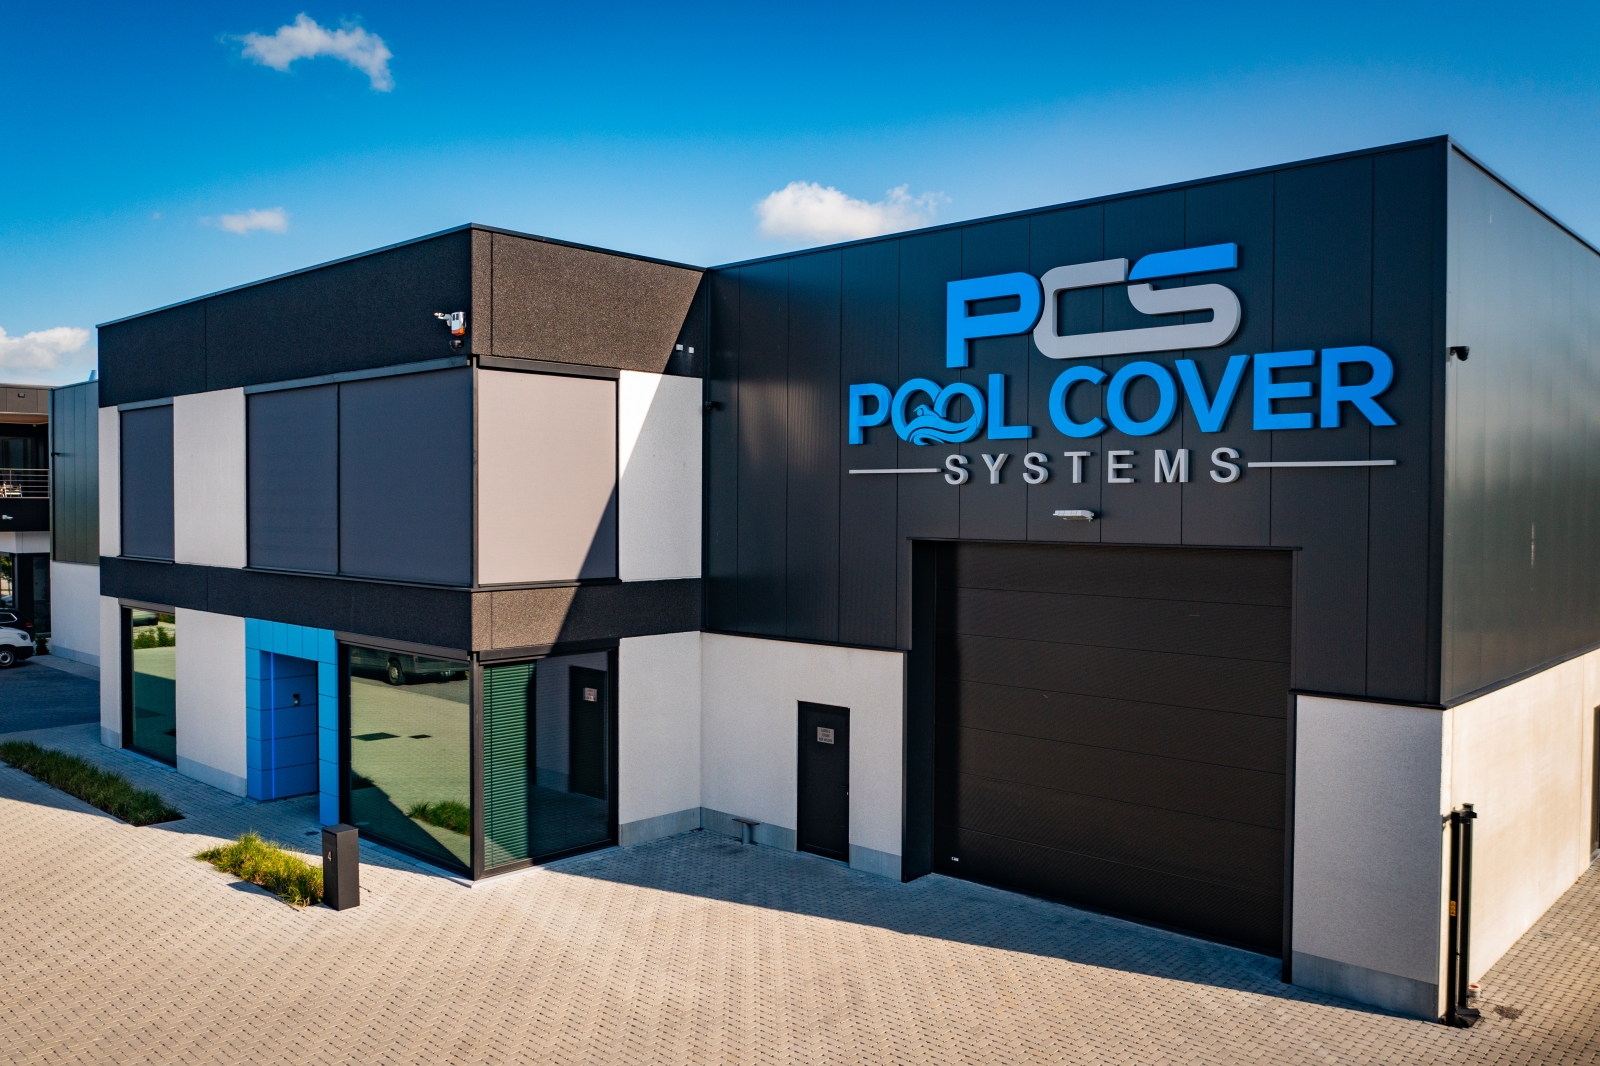 Bedrijfsgebouw voor Pool Cover Systems